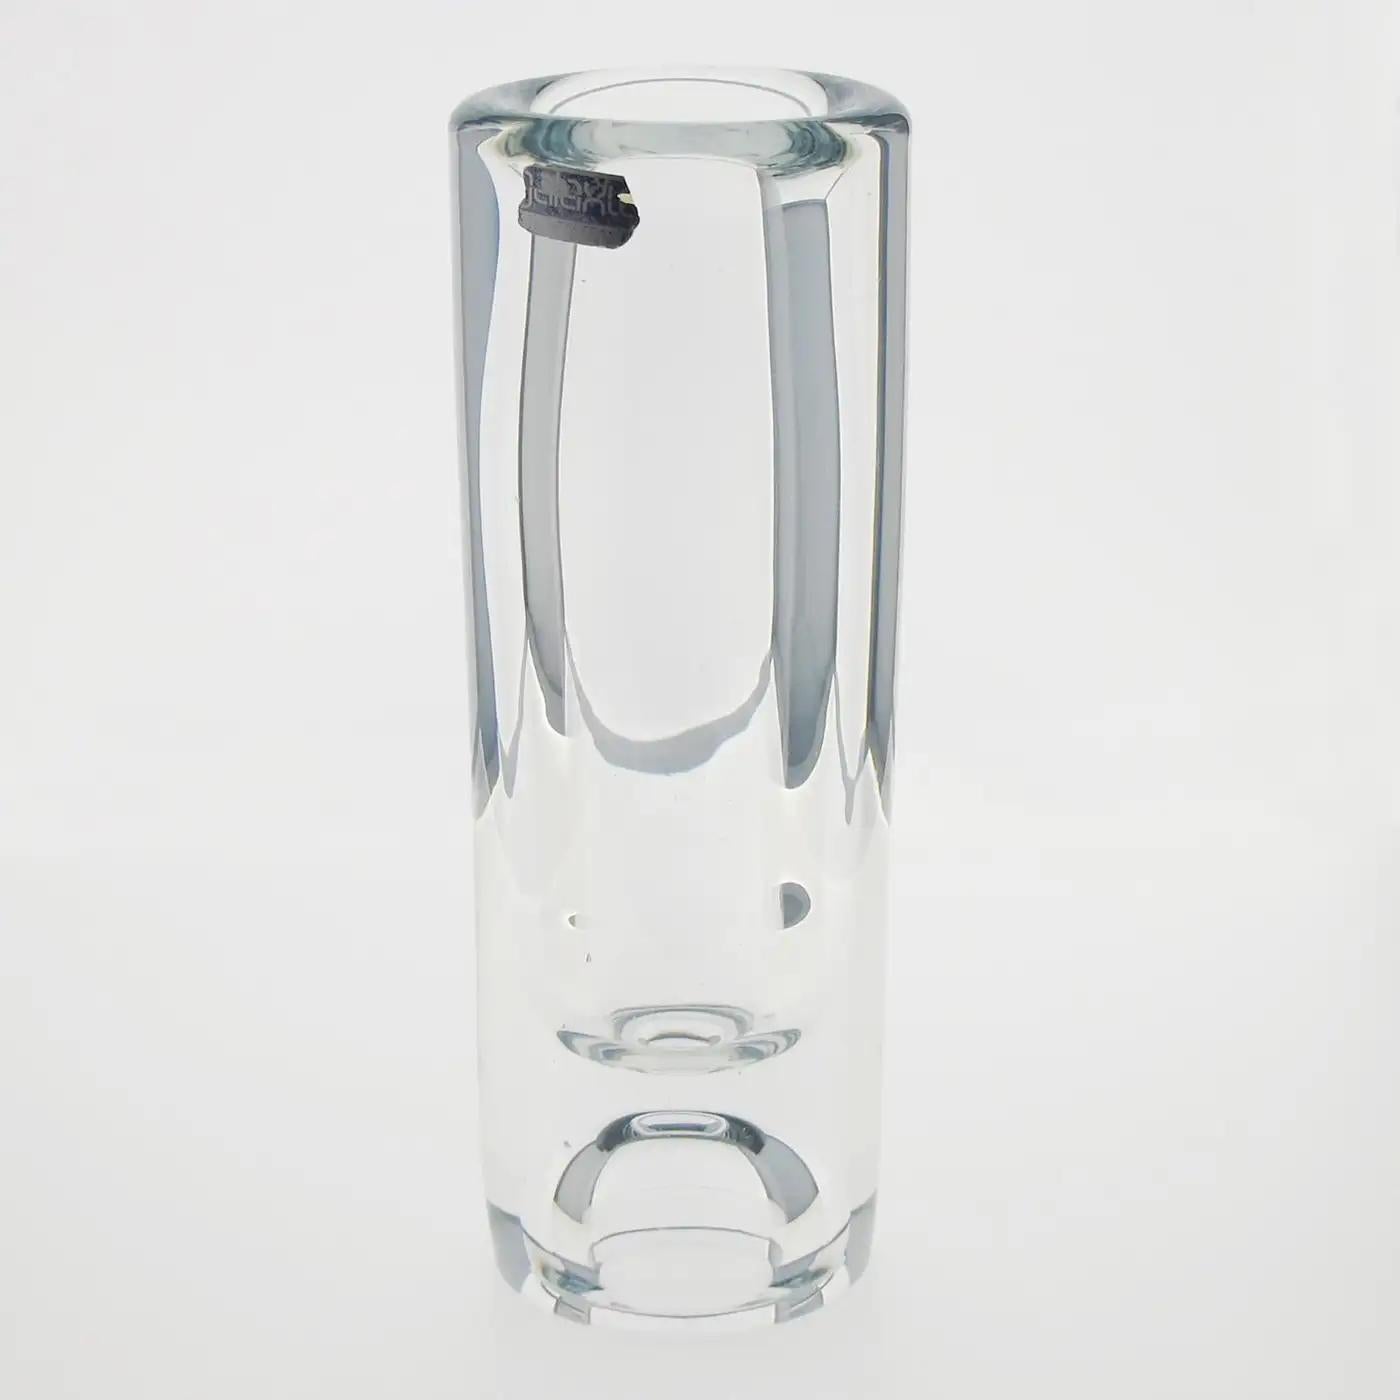 Die Compagnie Francaise du Cristal De Belroy für Daum produzierte diese modernistische Kristallvase um 1970. Das moderne, schlanke Design hat einen dicken Boden und die Form eines Bechers. Die Vase hat noch ihr originales Etikett an der Seite. Diese